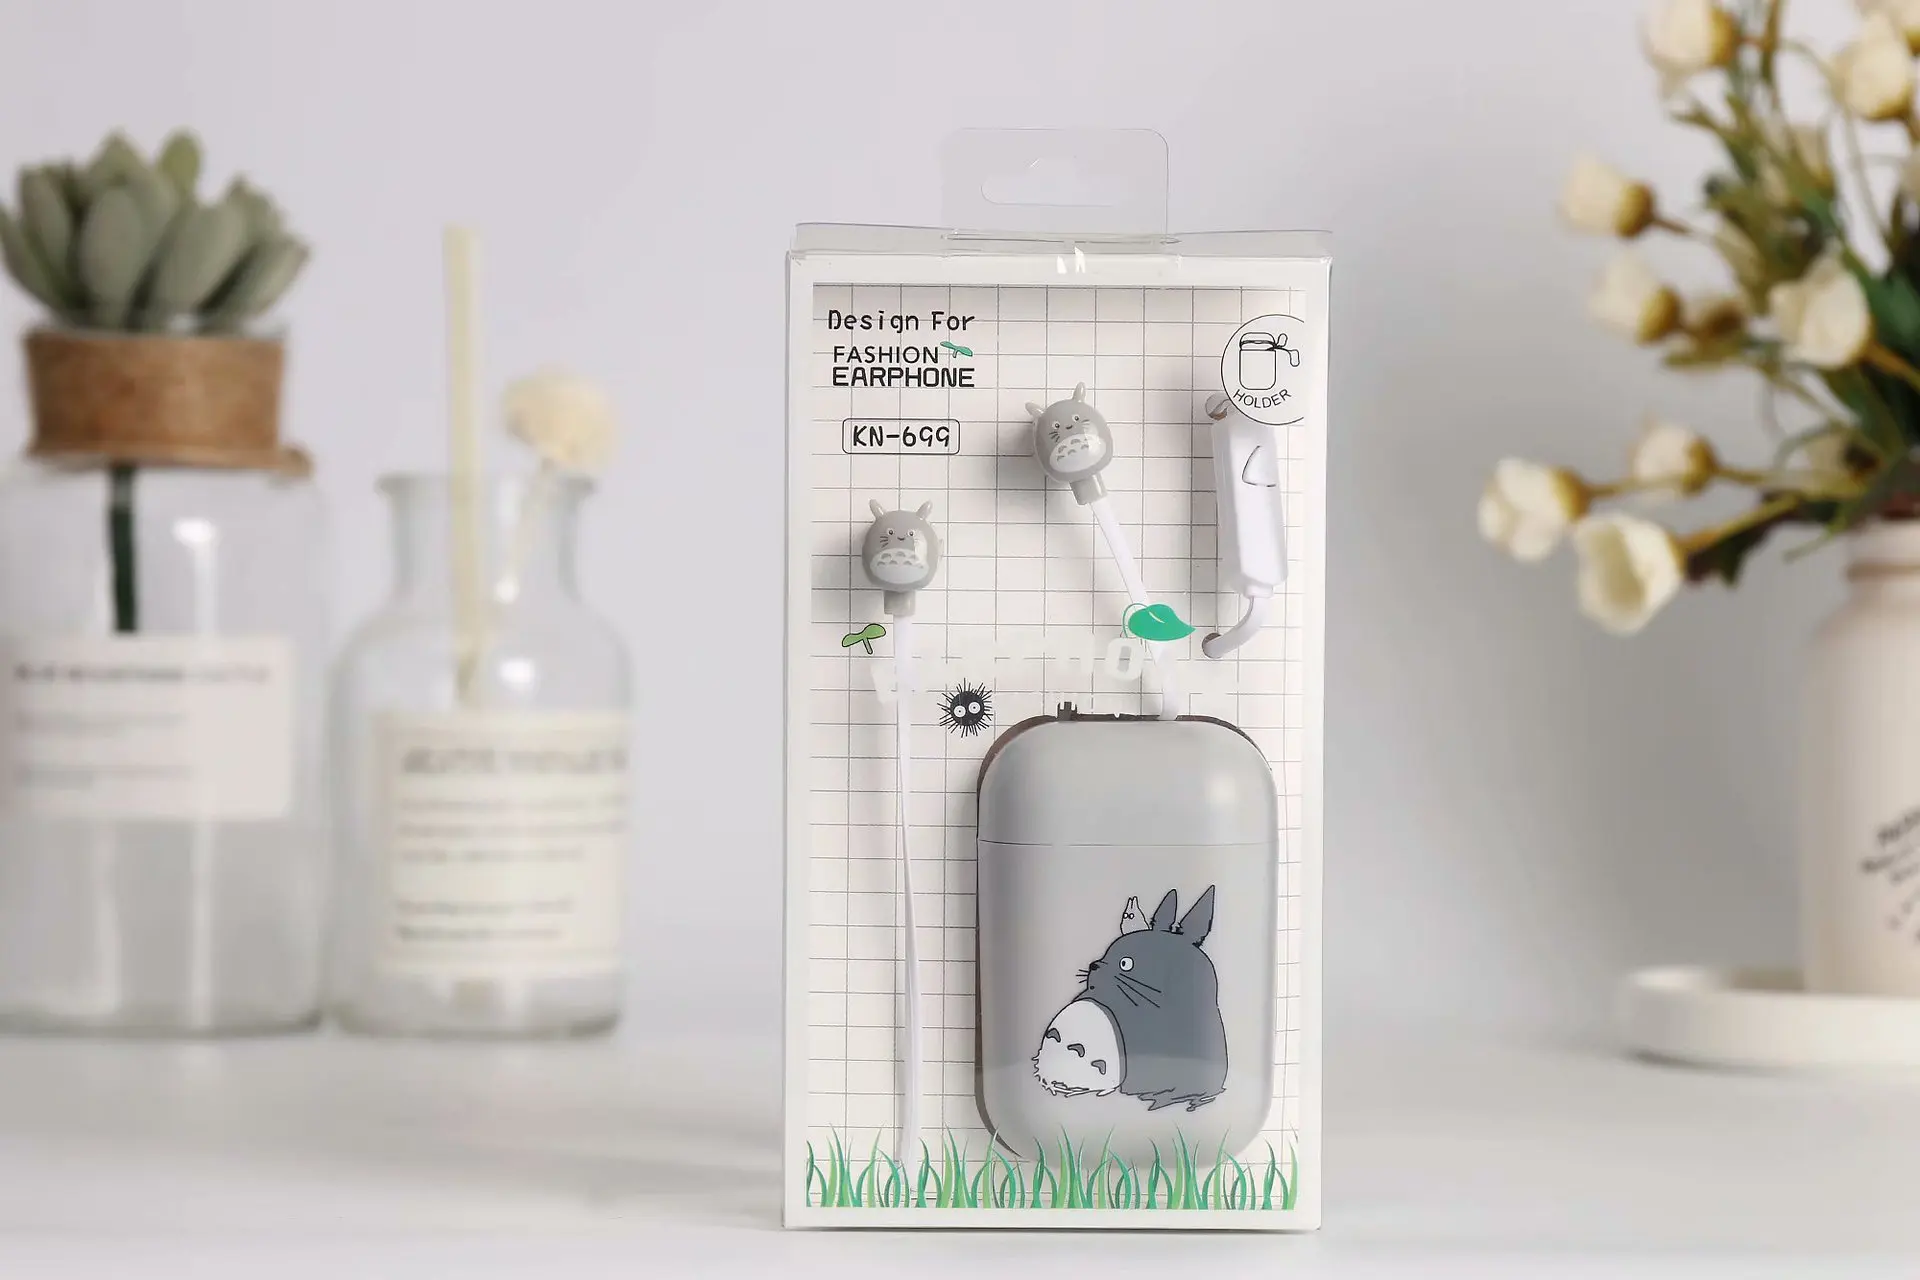 Fraflor милые наушники Totoro 3,5 мм с микрофоном, музыкальные Универсальные наушники-вкладыши с коробкой для хранения для Xiaomi, MP3, детей, студенток, подарок для девочек